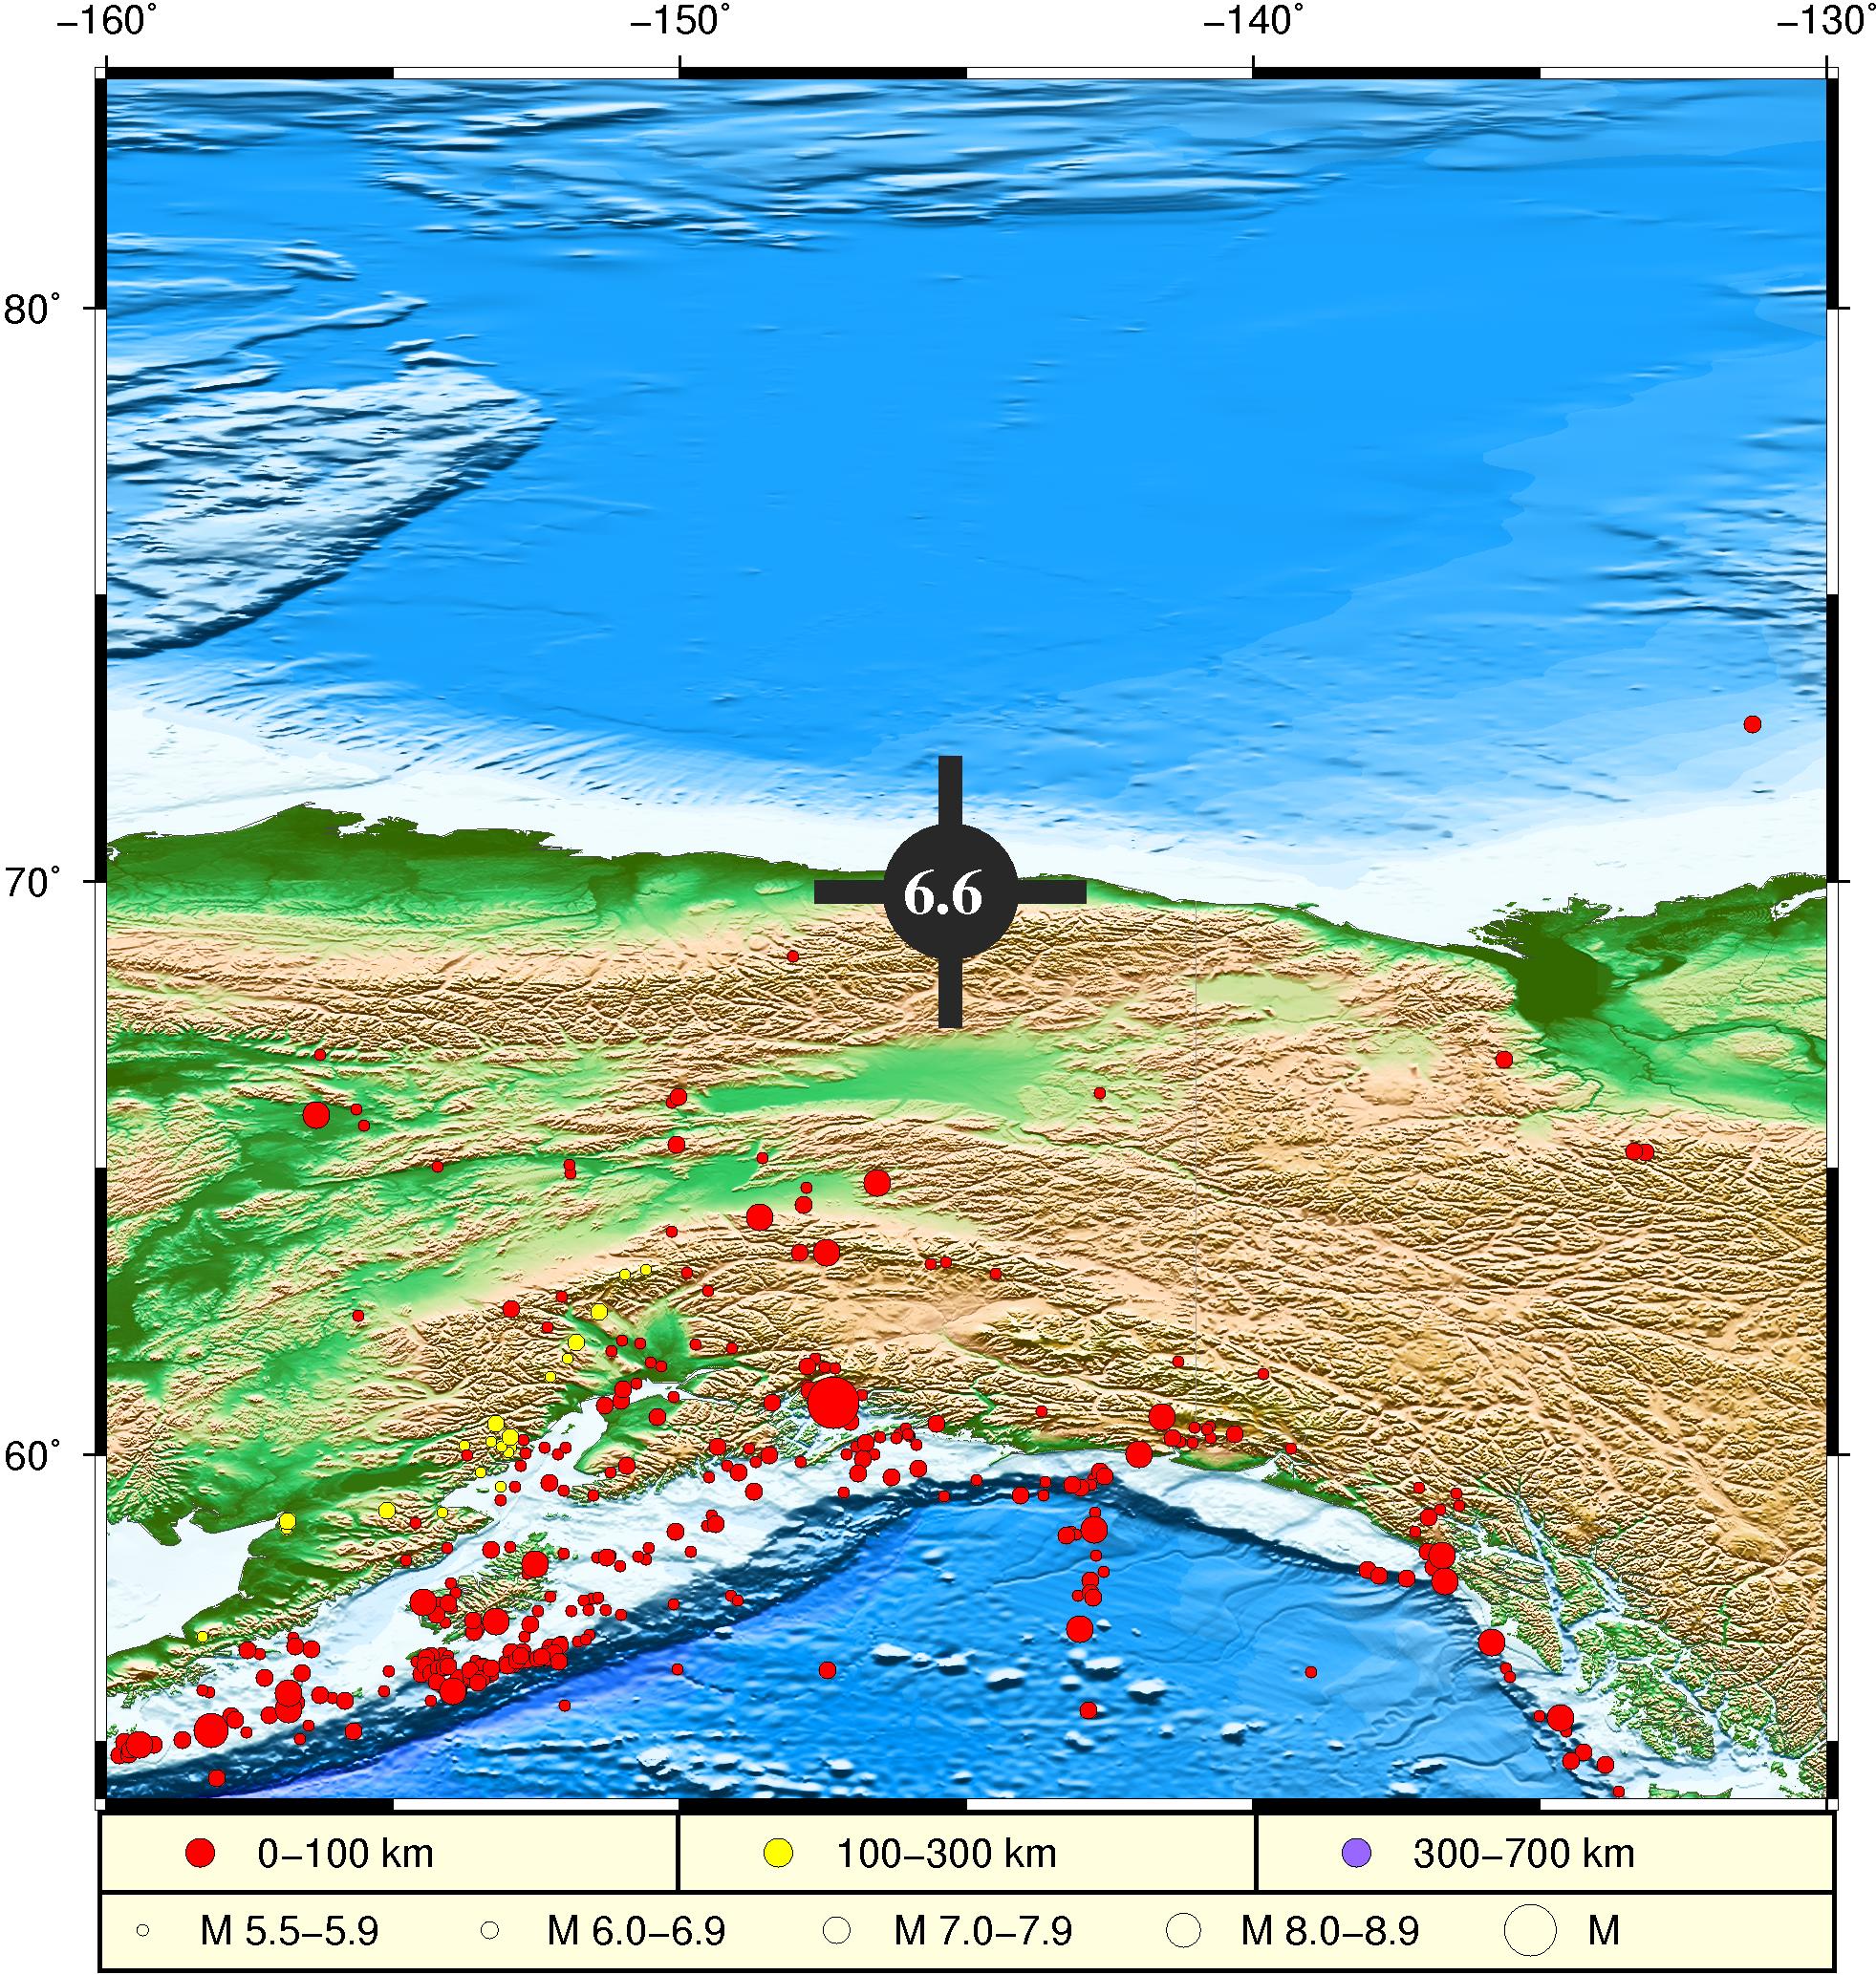 美国加州发生 7.1 级地震，目前情况如何？强震如此频繁，未来可能再次发生吗？ - 知乎